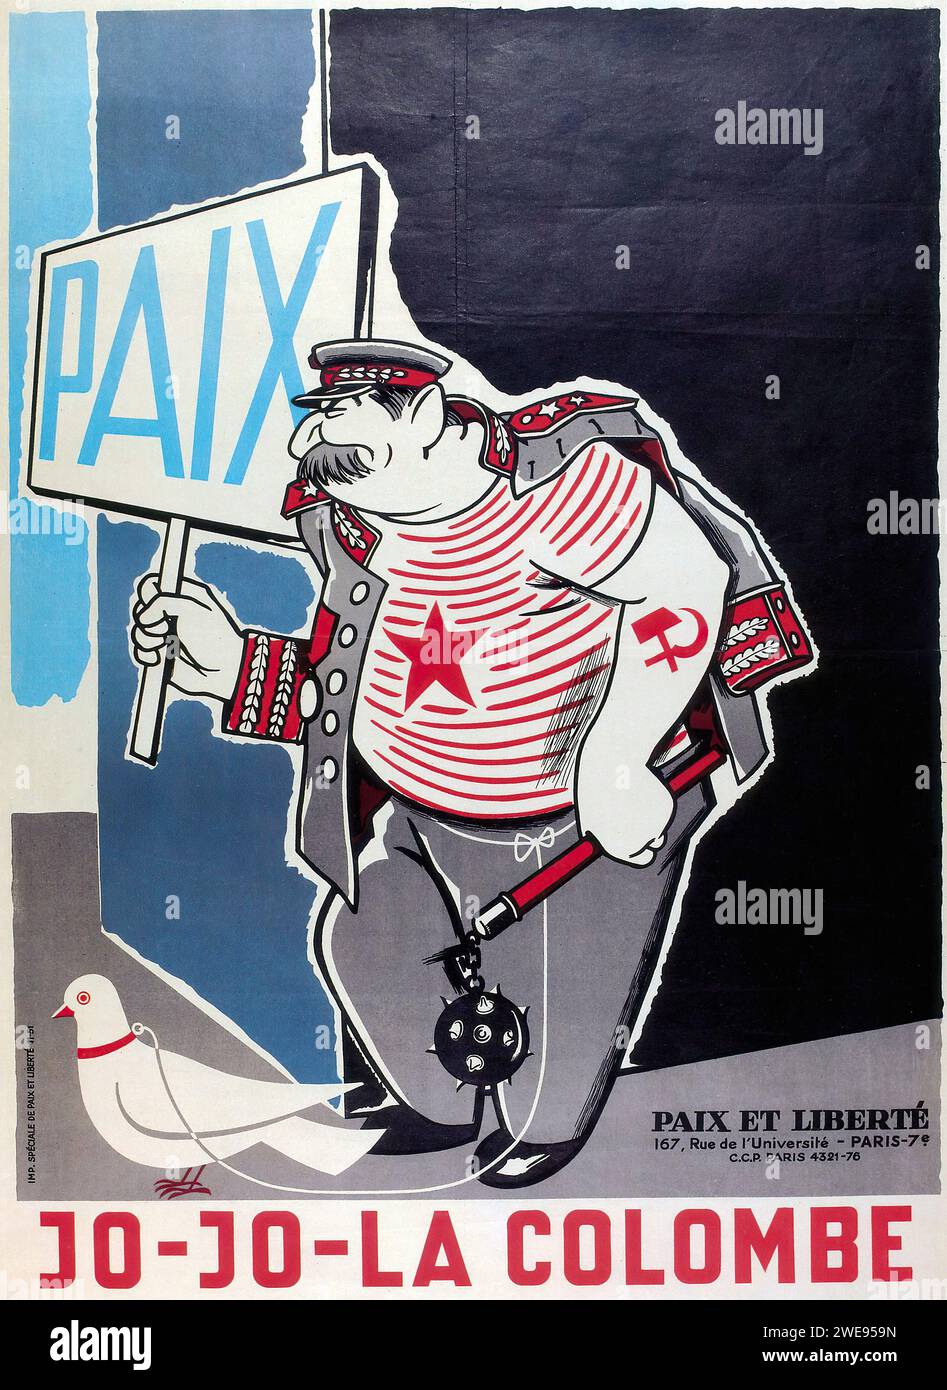 'PAIX JO-LA COLOMBE PAX ET LIBERTÉ 167, Rue de l'Université - PARIS 7' ['PEACE JO-THE DOVE PAX AND LIBERTY 167, University Street - PARIS 7'] französische Vintage-Werbung. Das Bild zeigt eine Karikatur von Staline mit einem Schild mit der Aufschrift „FRIEDEN“ und einer Taube daneben, auf blauem Hintergrund. Der Stil ist satirisch mit auffälligen Linien und einer cartoonischen Darstellung, die typisch für politische Kommentare der Mitte des 20. Jahrhunderts ist. Stockfoto